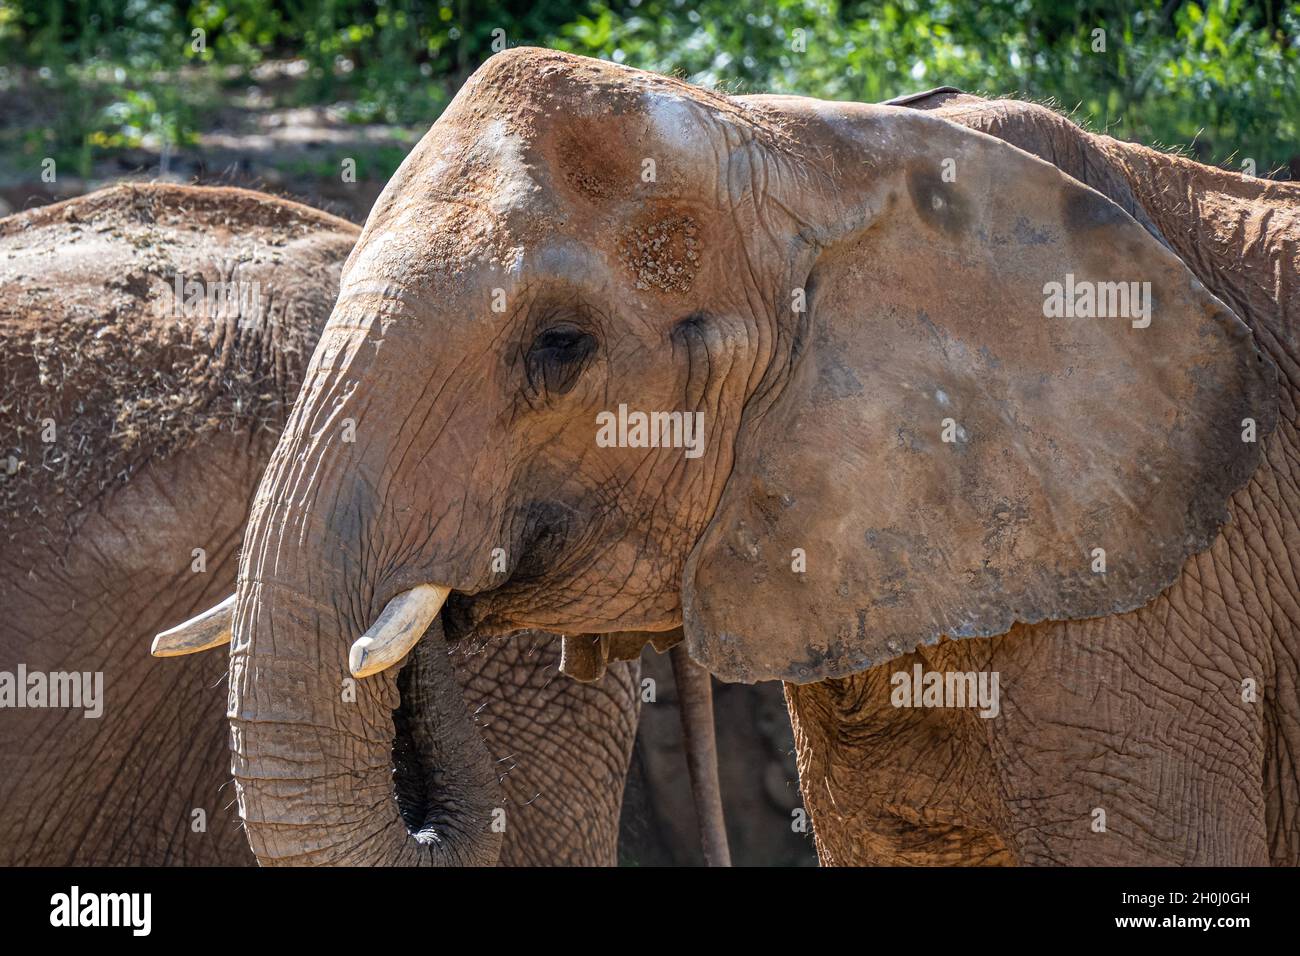 Éléphants d'Afrique (Loxodonta africana) à l'exposition sur l'habitat de la savane africaine du zoo d'Atlanta, près du centre-ville d'Atlanta, en Géorgie.(ÉTATS-UNIS) Banque D'Images